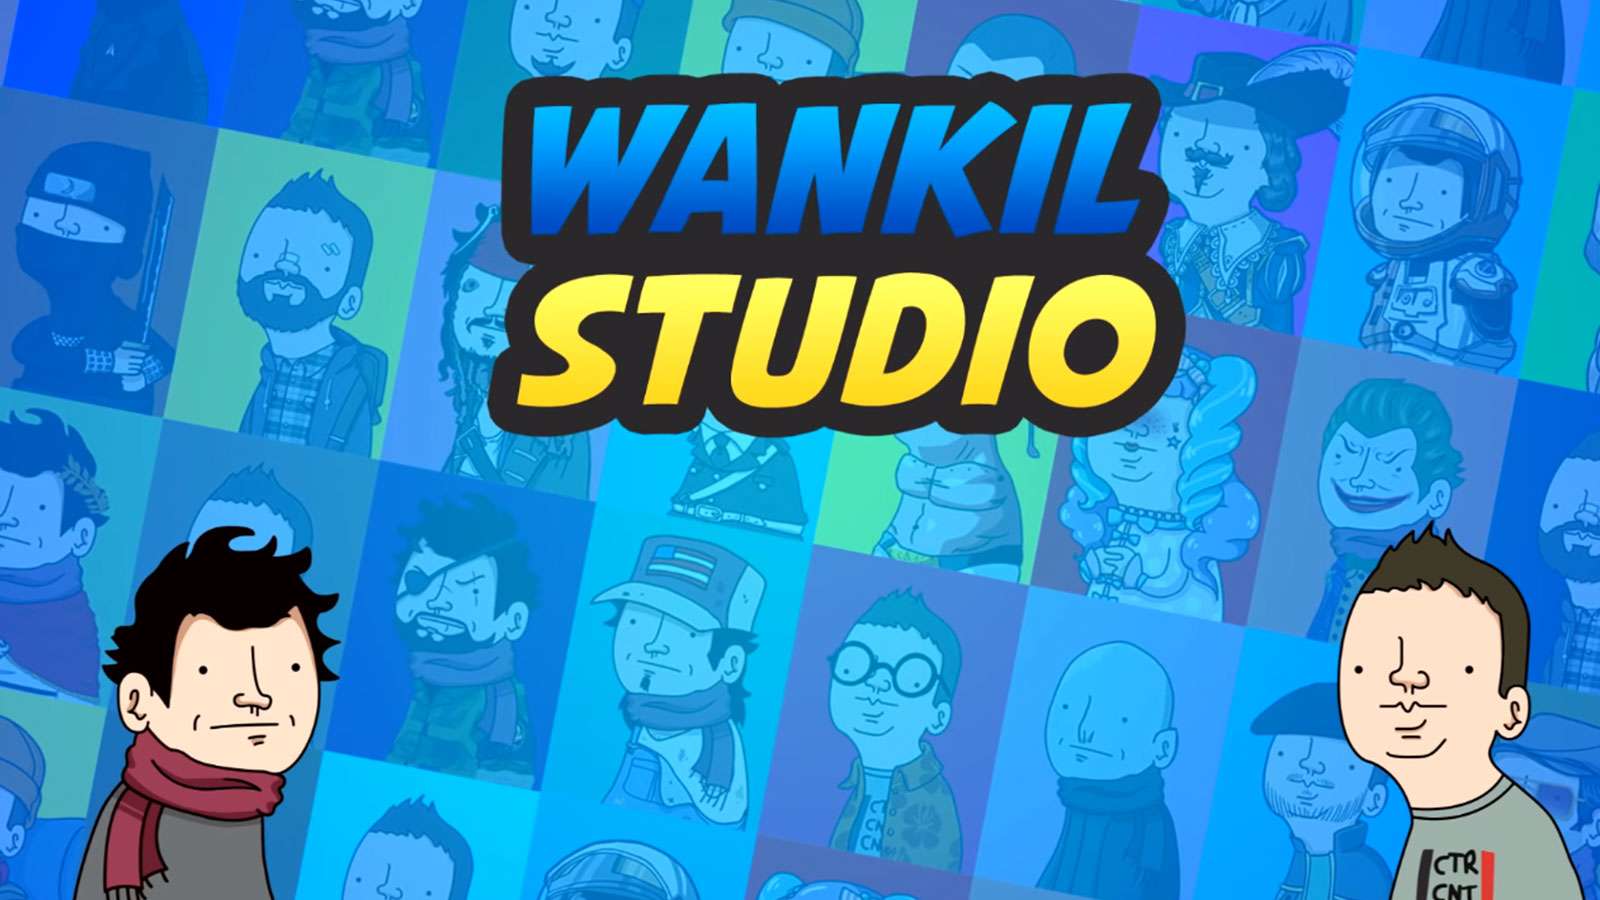 Le Wankil Studio se lance dans une nouvelle FAQ